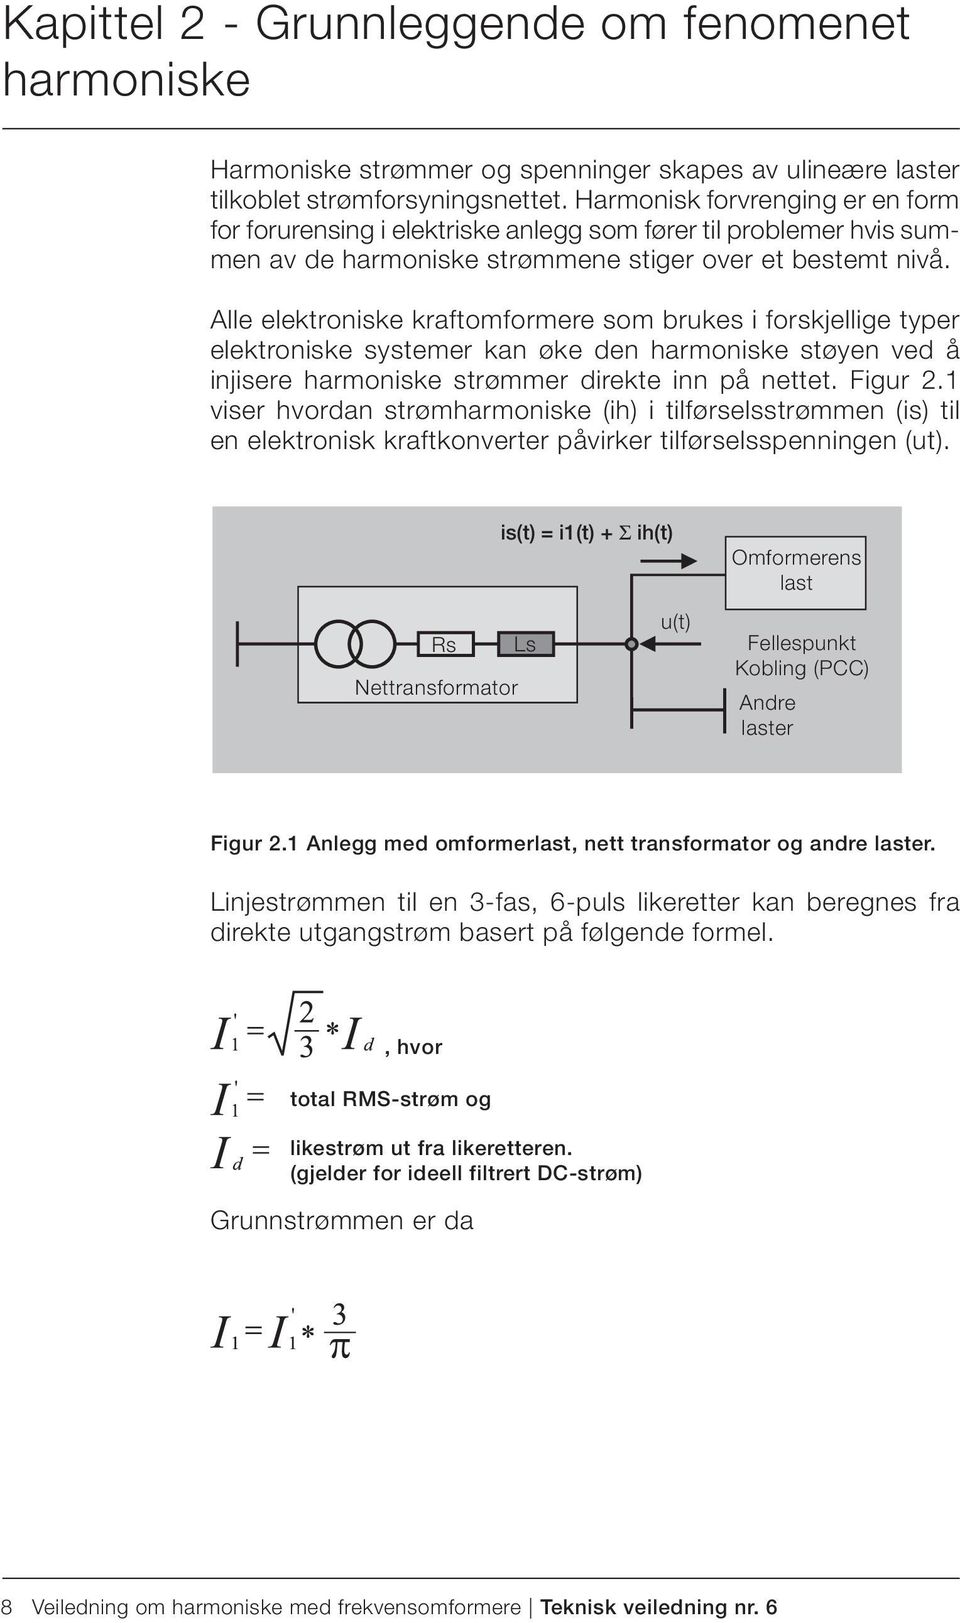 Alle elektroniske kraftomformere som brukes i forskjellige typer elektroniske systemer kan øke den harmoniske støyen ved å injisere harmoniske strømmer direkte inn på nettet. Figur 2.